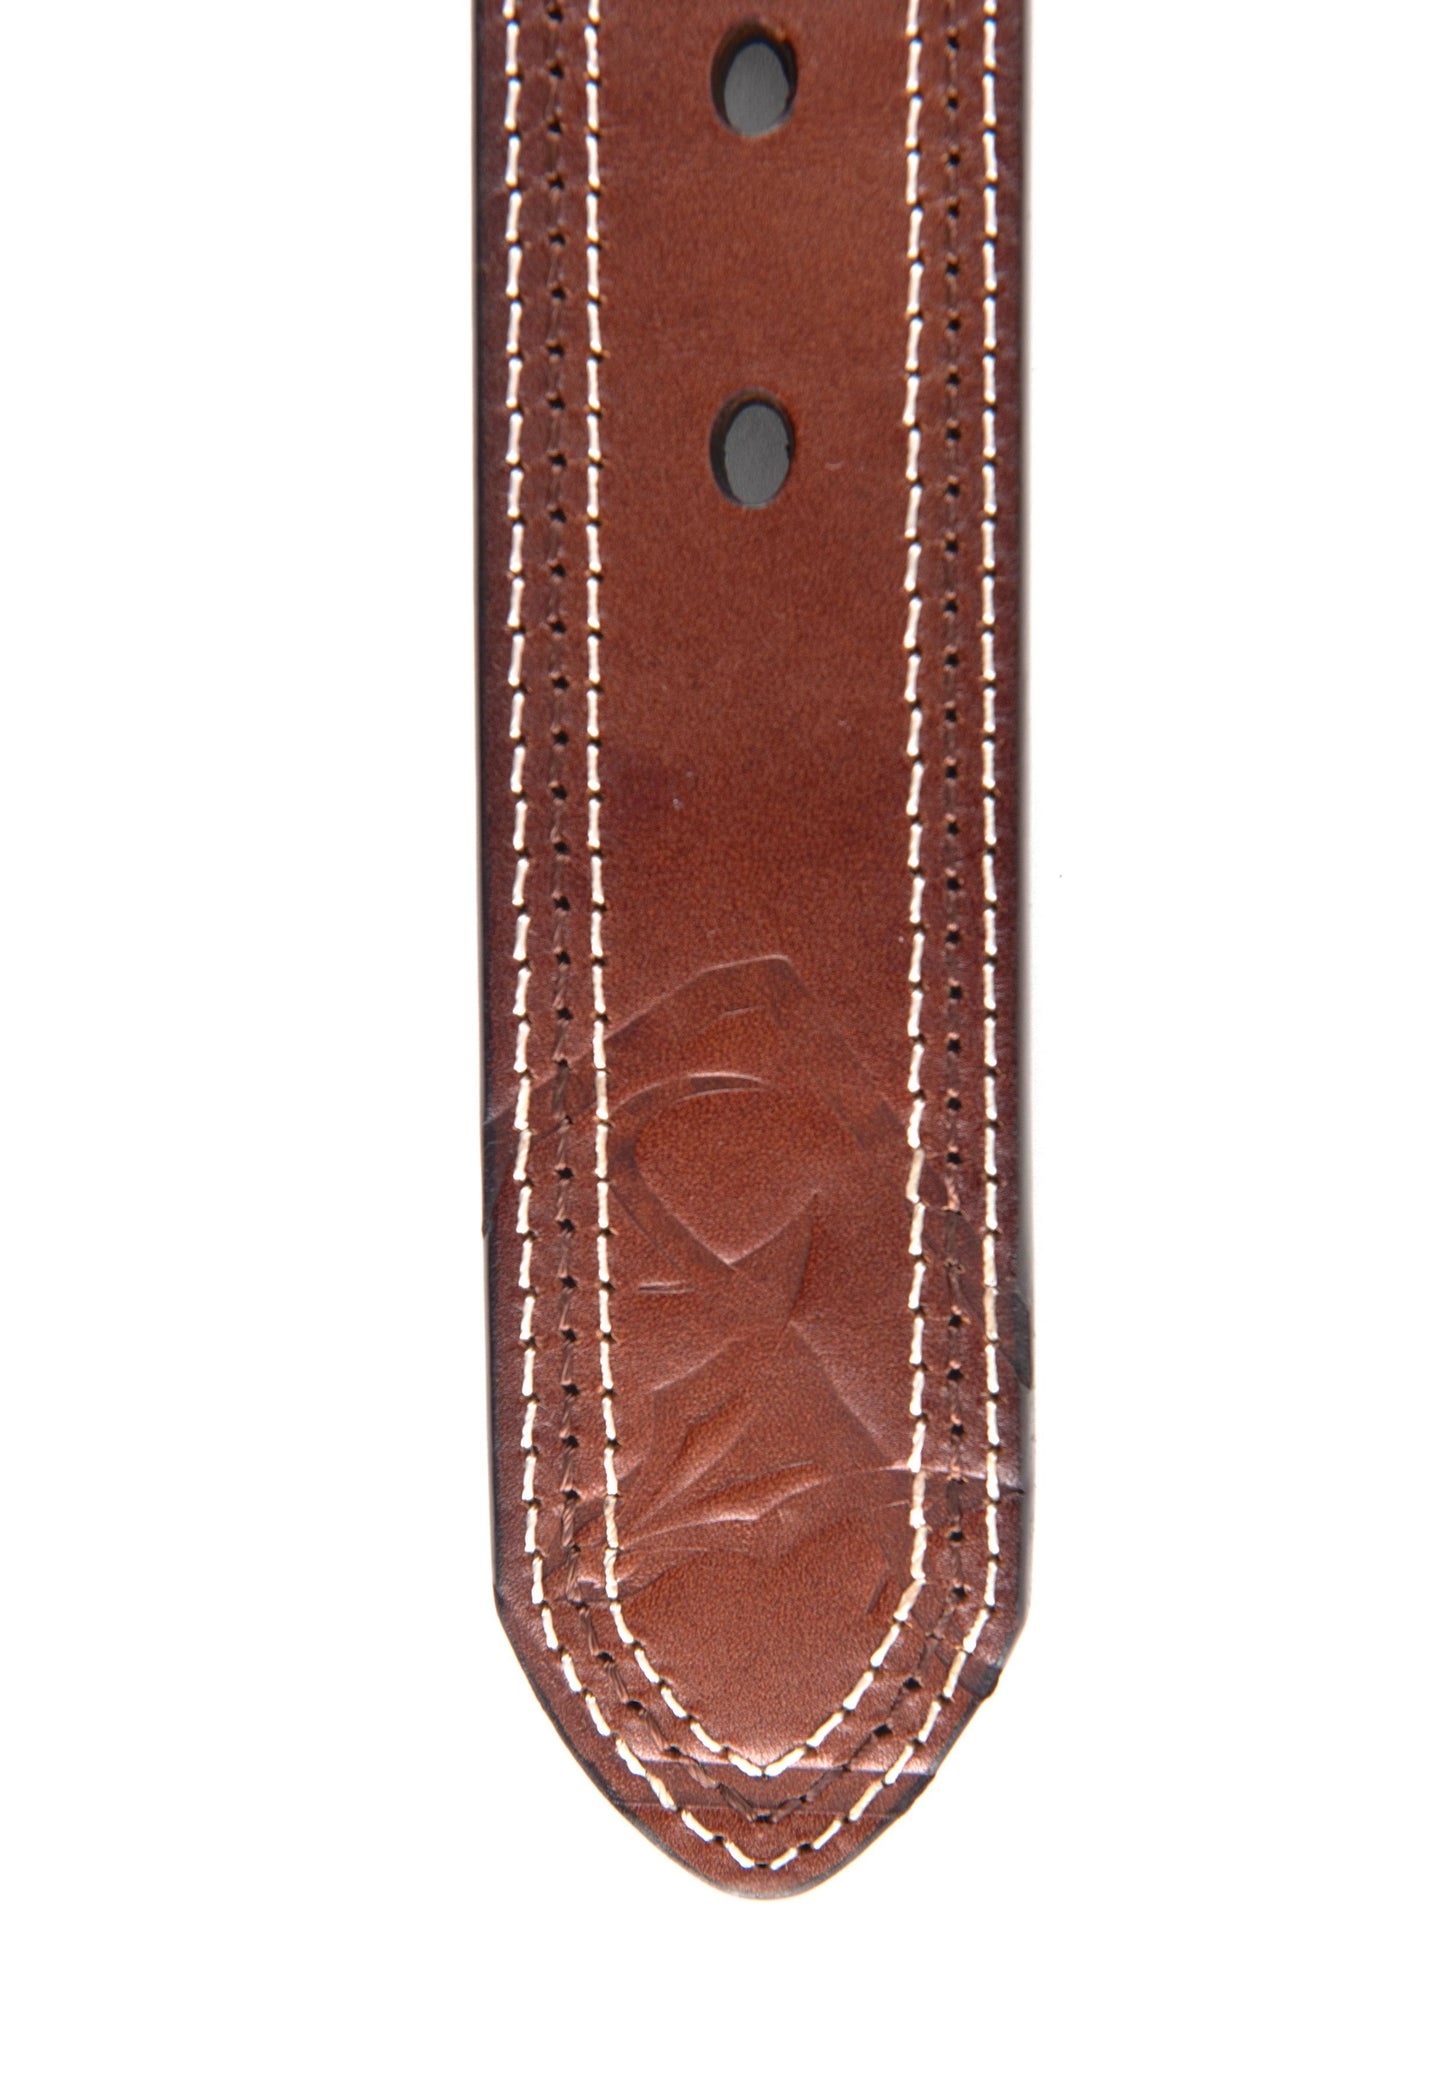 Mens Genuine Leather Stamped Belt - Brown